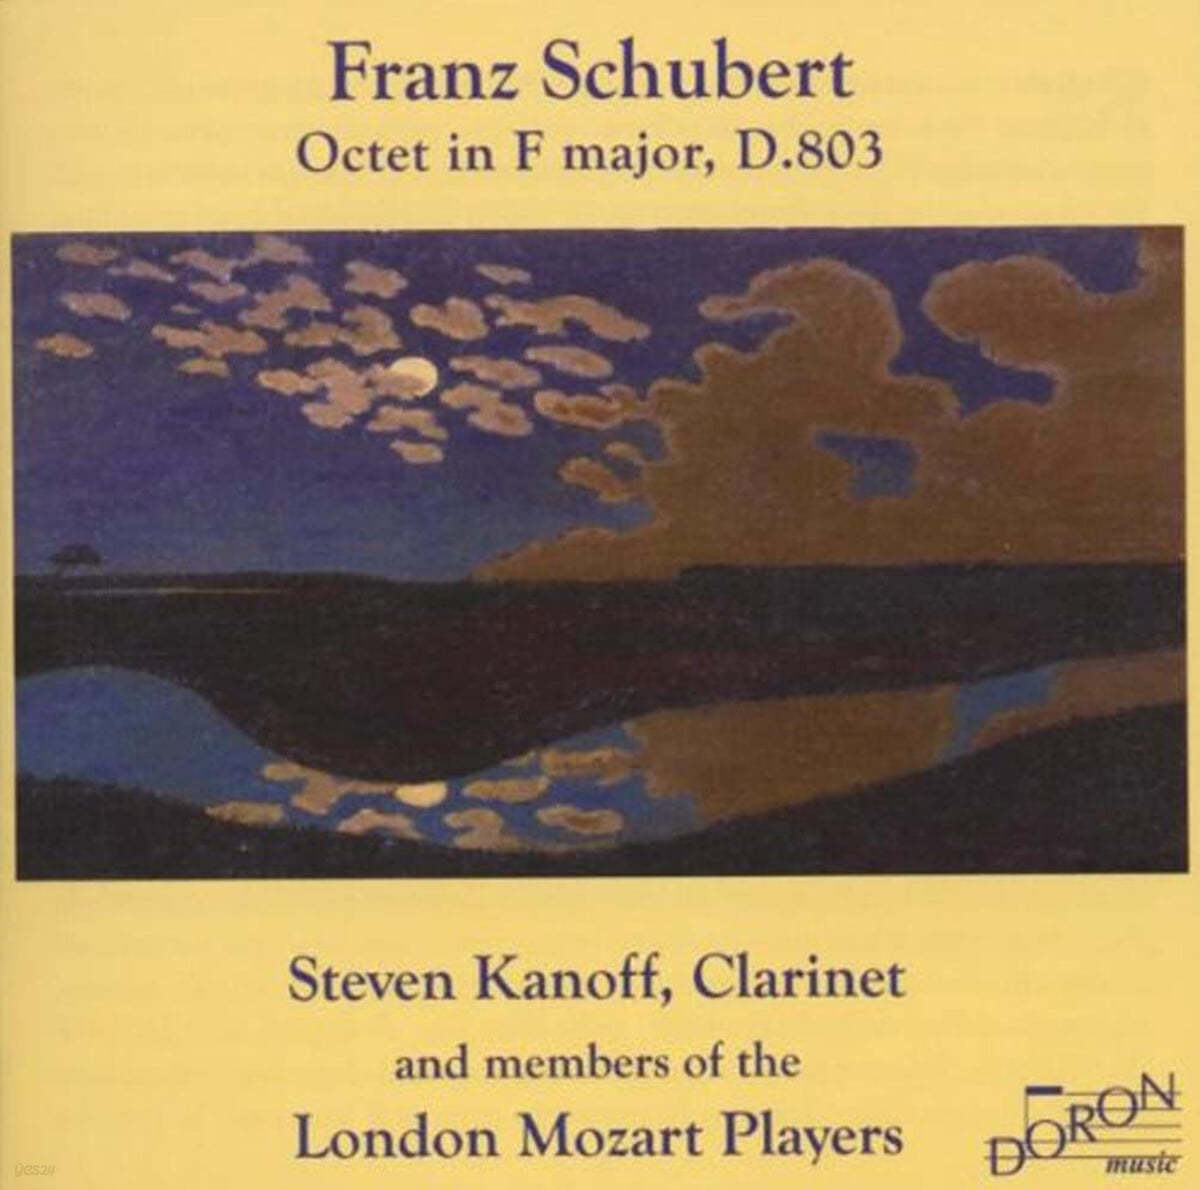 Steven Kanoff / London Mozart Players 슈베르트: 팔중주 (Schubert: Octet in F major, D.803) 